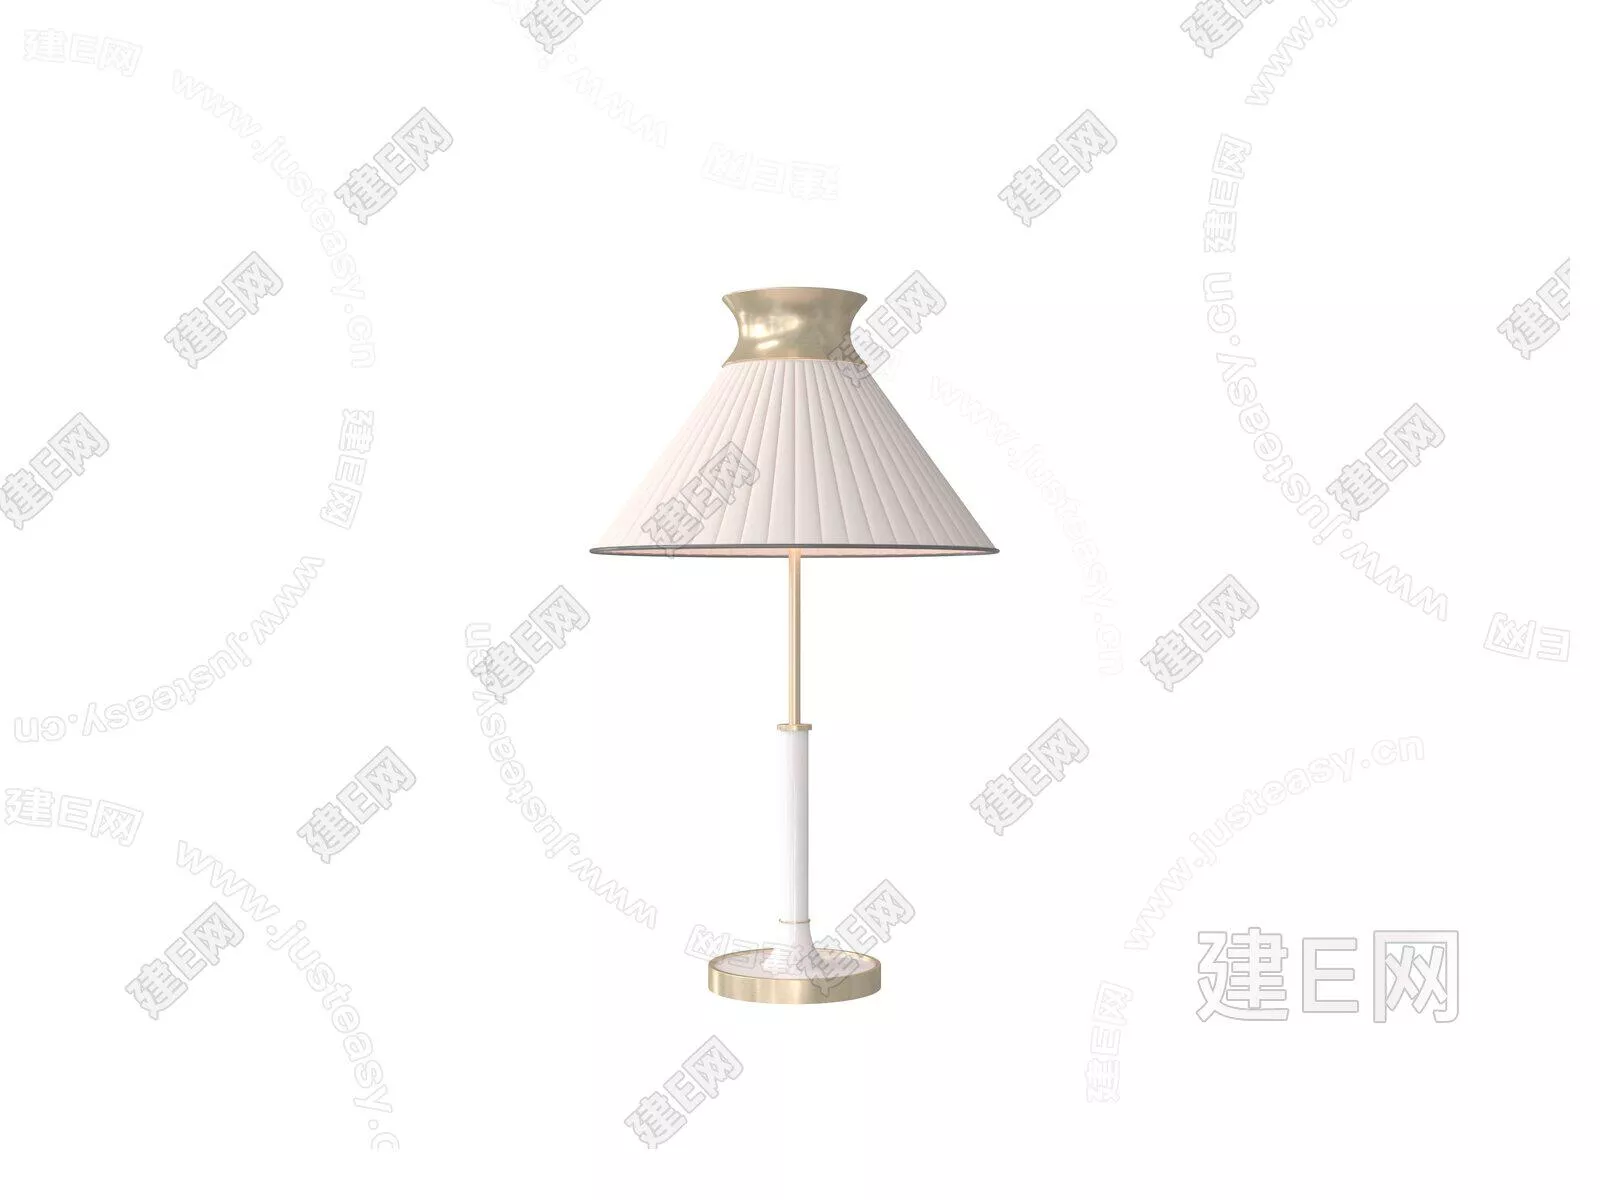 MODERN TABLE LAMP - SKETCHUP 3D MODEL - ENSCAPE - 105269366